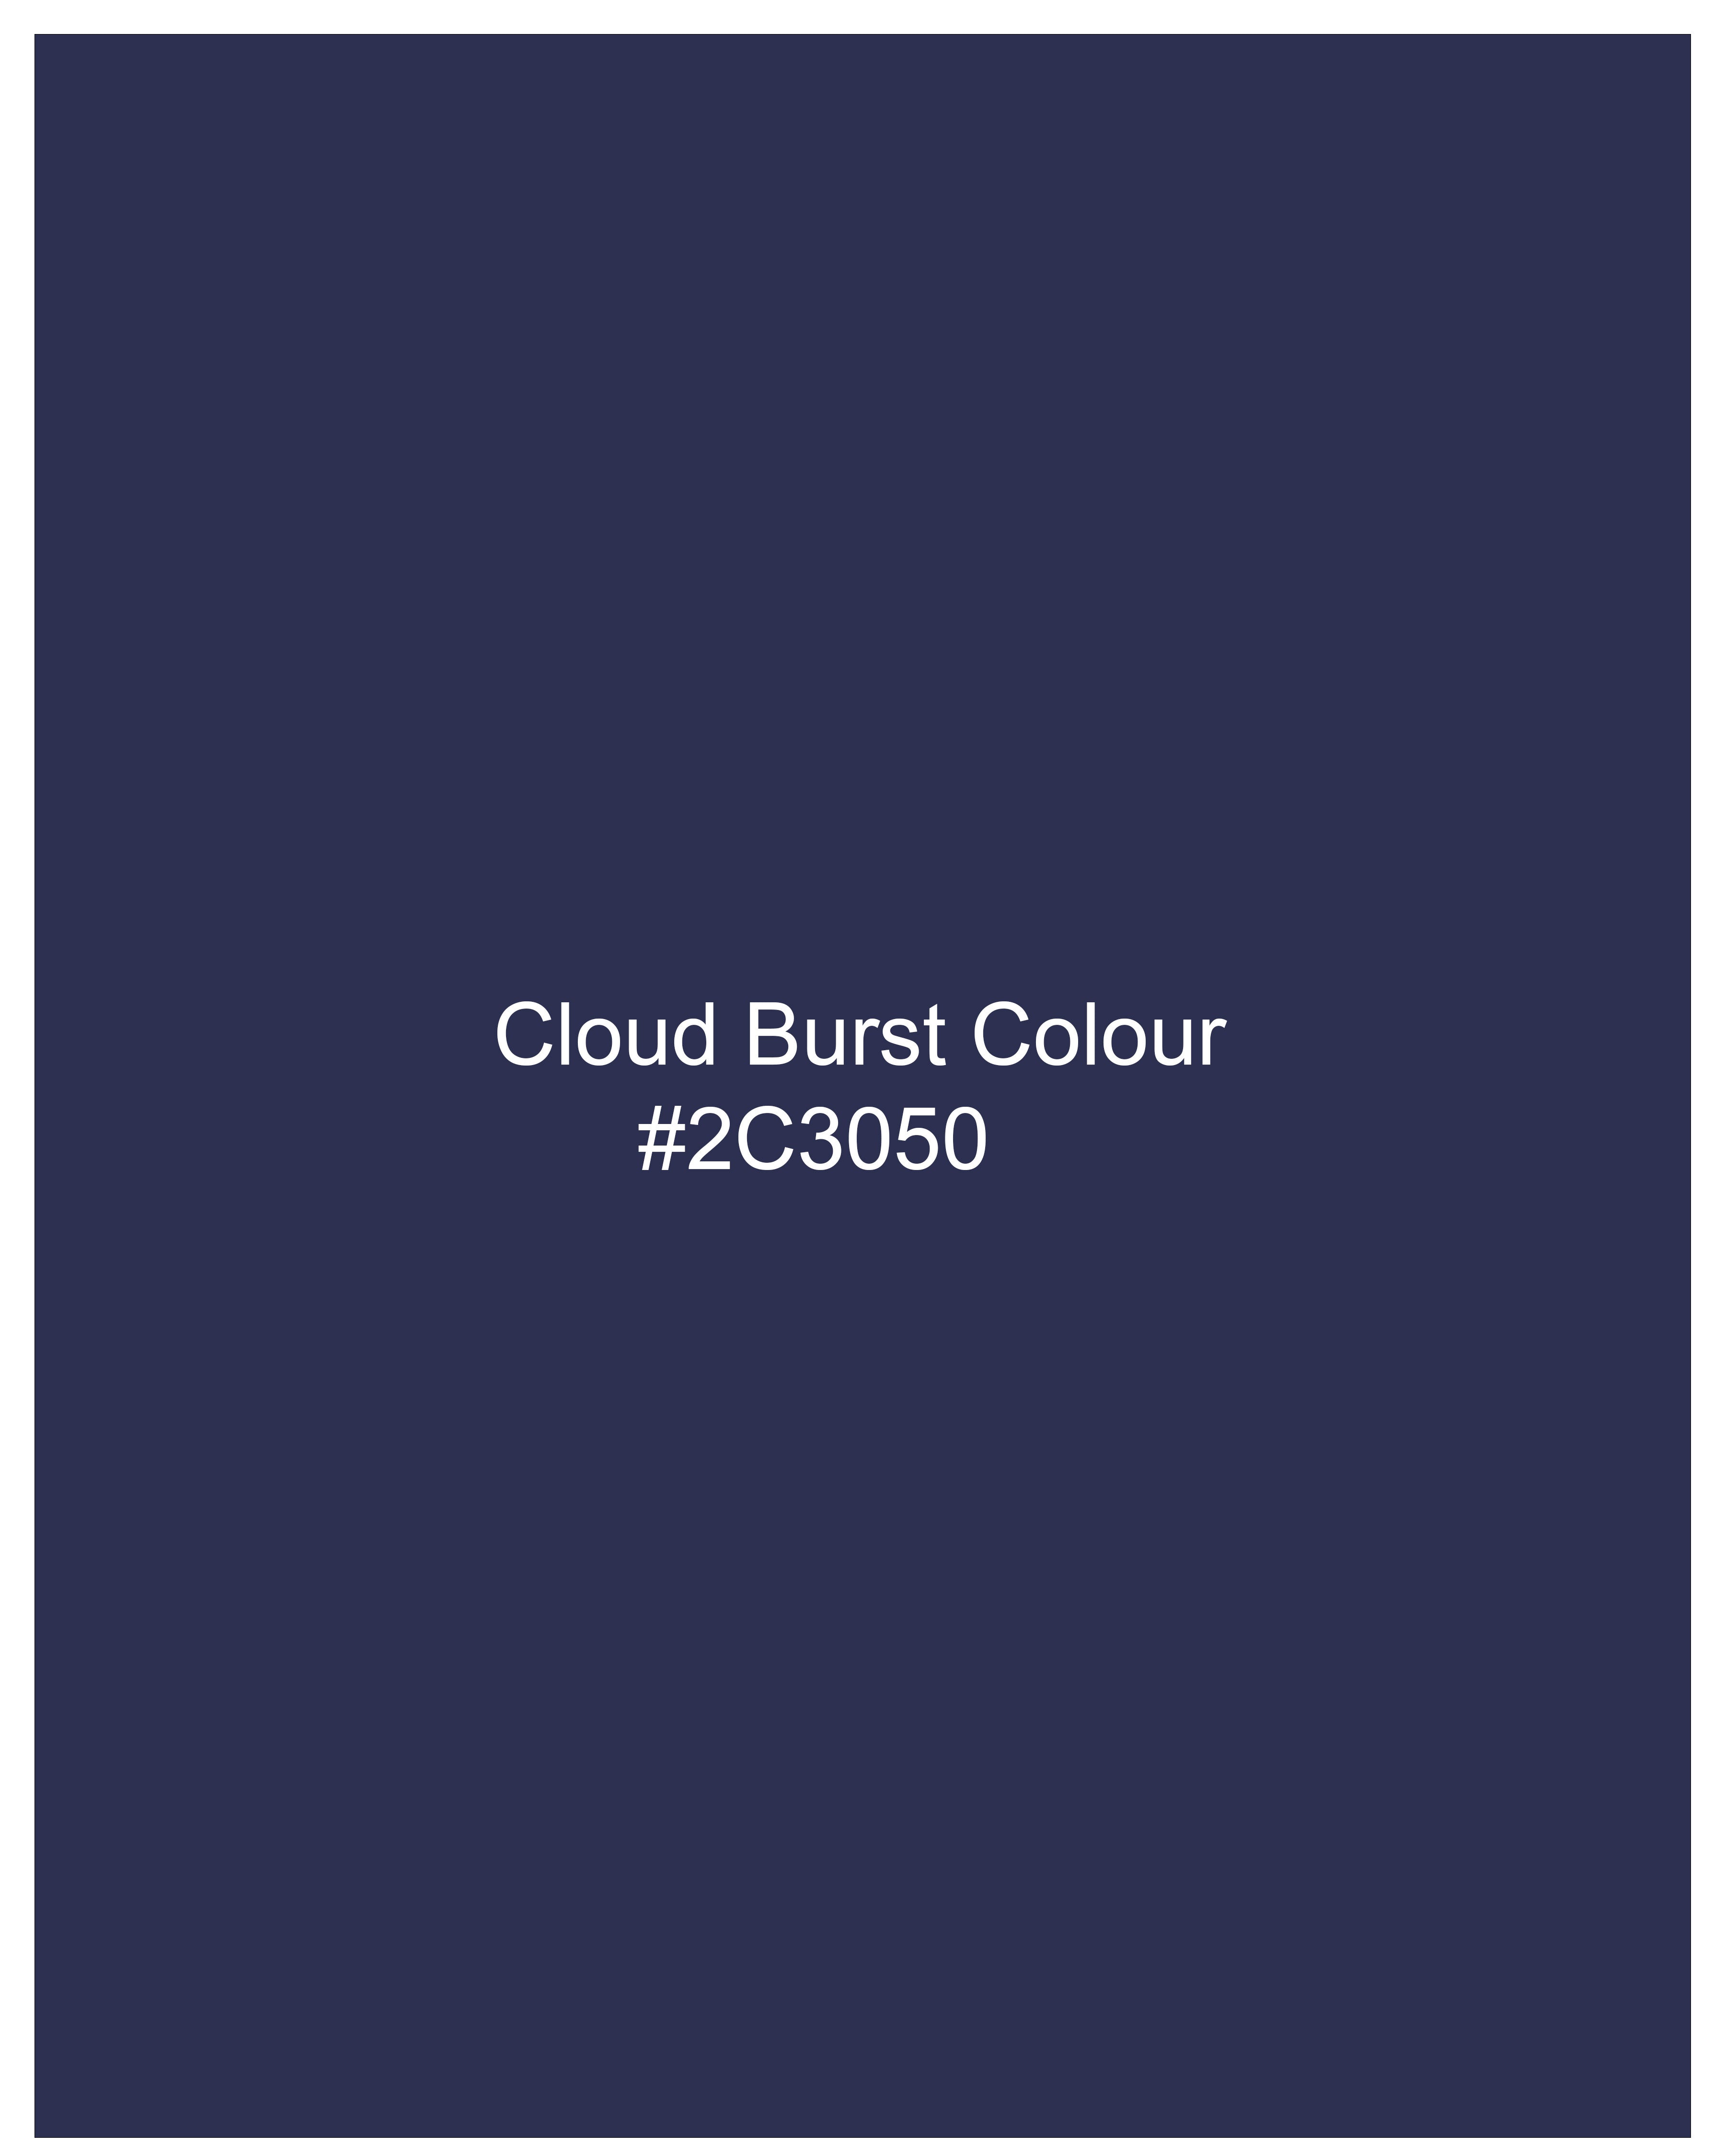 Cloud Burst Blue Pants T2499-28, T2499-30, T2499-32, T2499-34, T2499-36, T2499-38, T2499-40, T2499-42, T2499-44